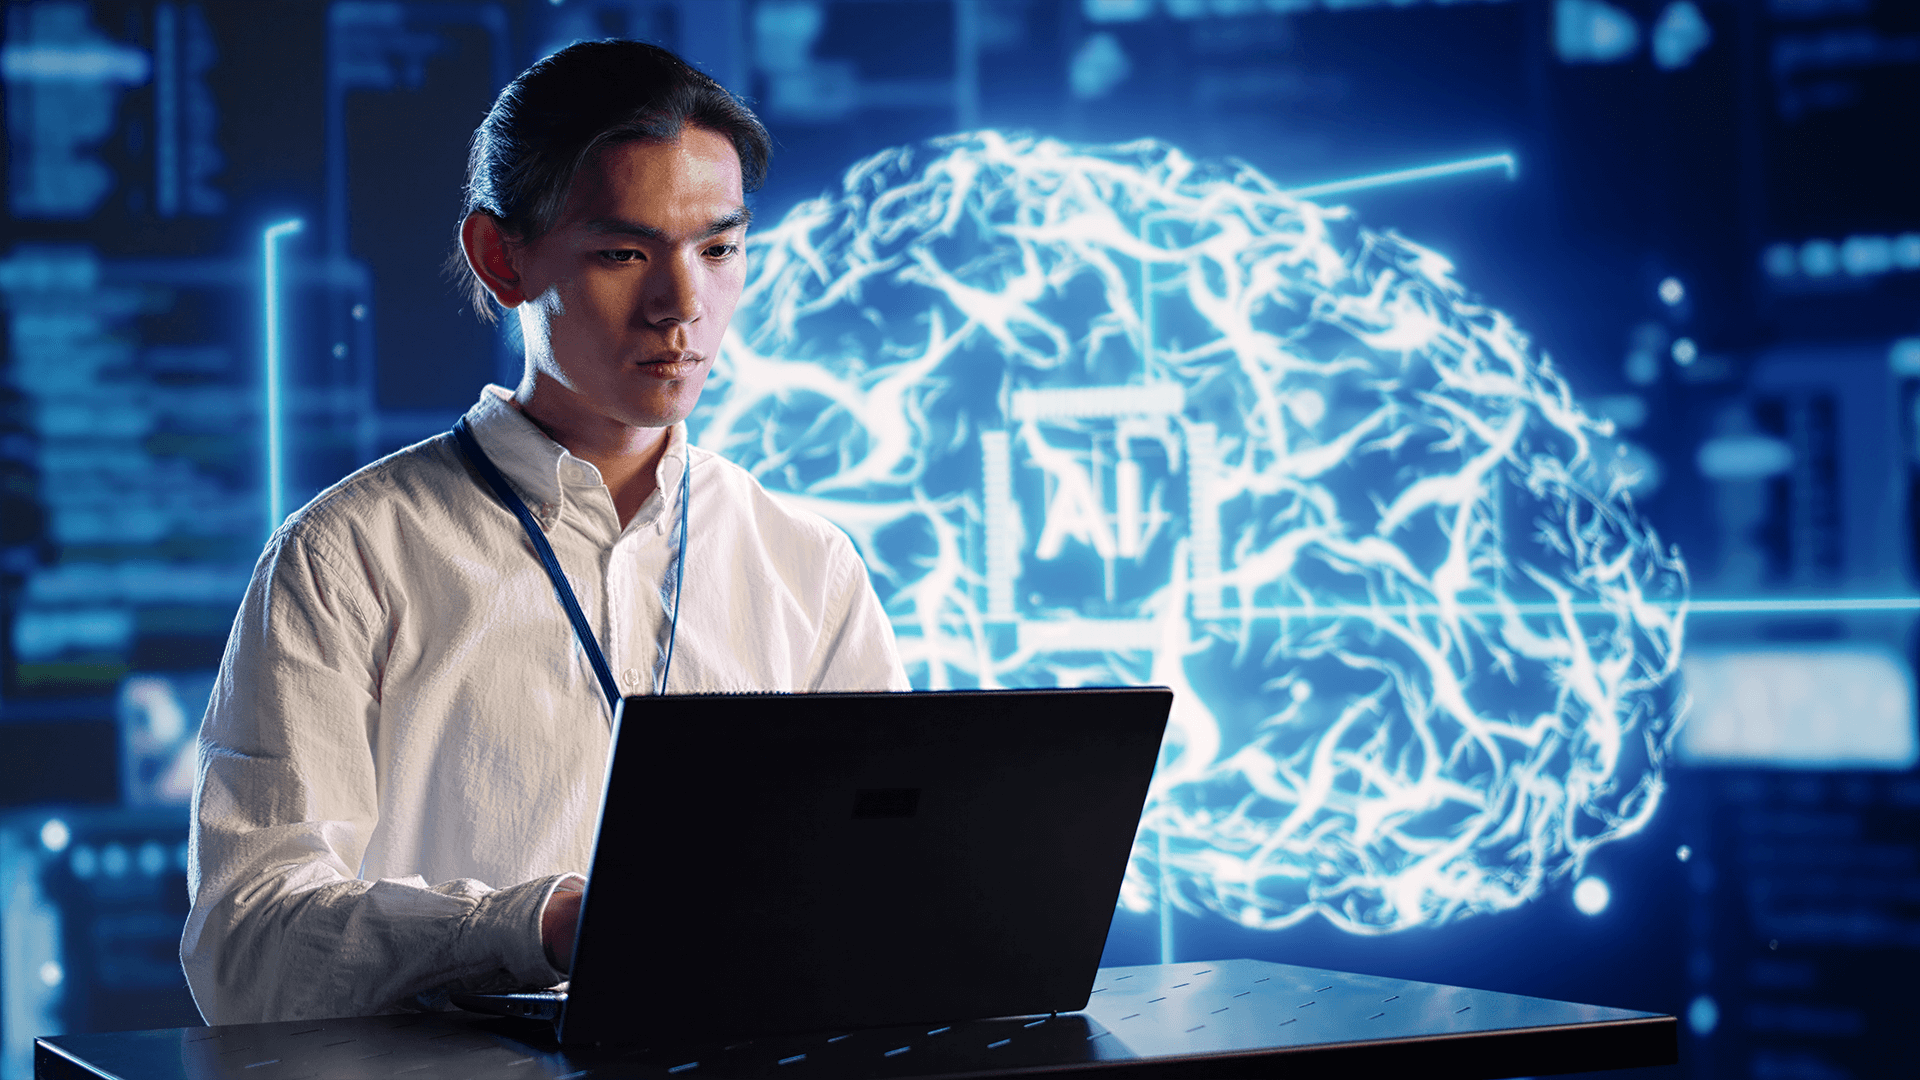 Homem mexendo no computador com imagem de cérebro no fundo com sigla "AI", que significa o universo da inteligência artificial, deep learning e machine learning.